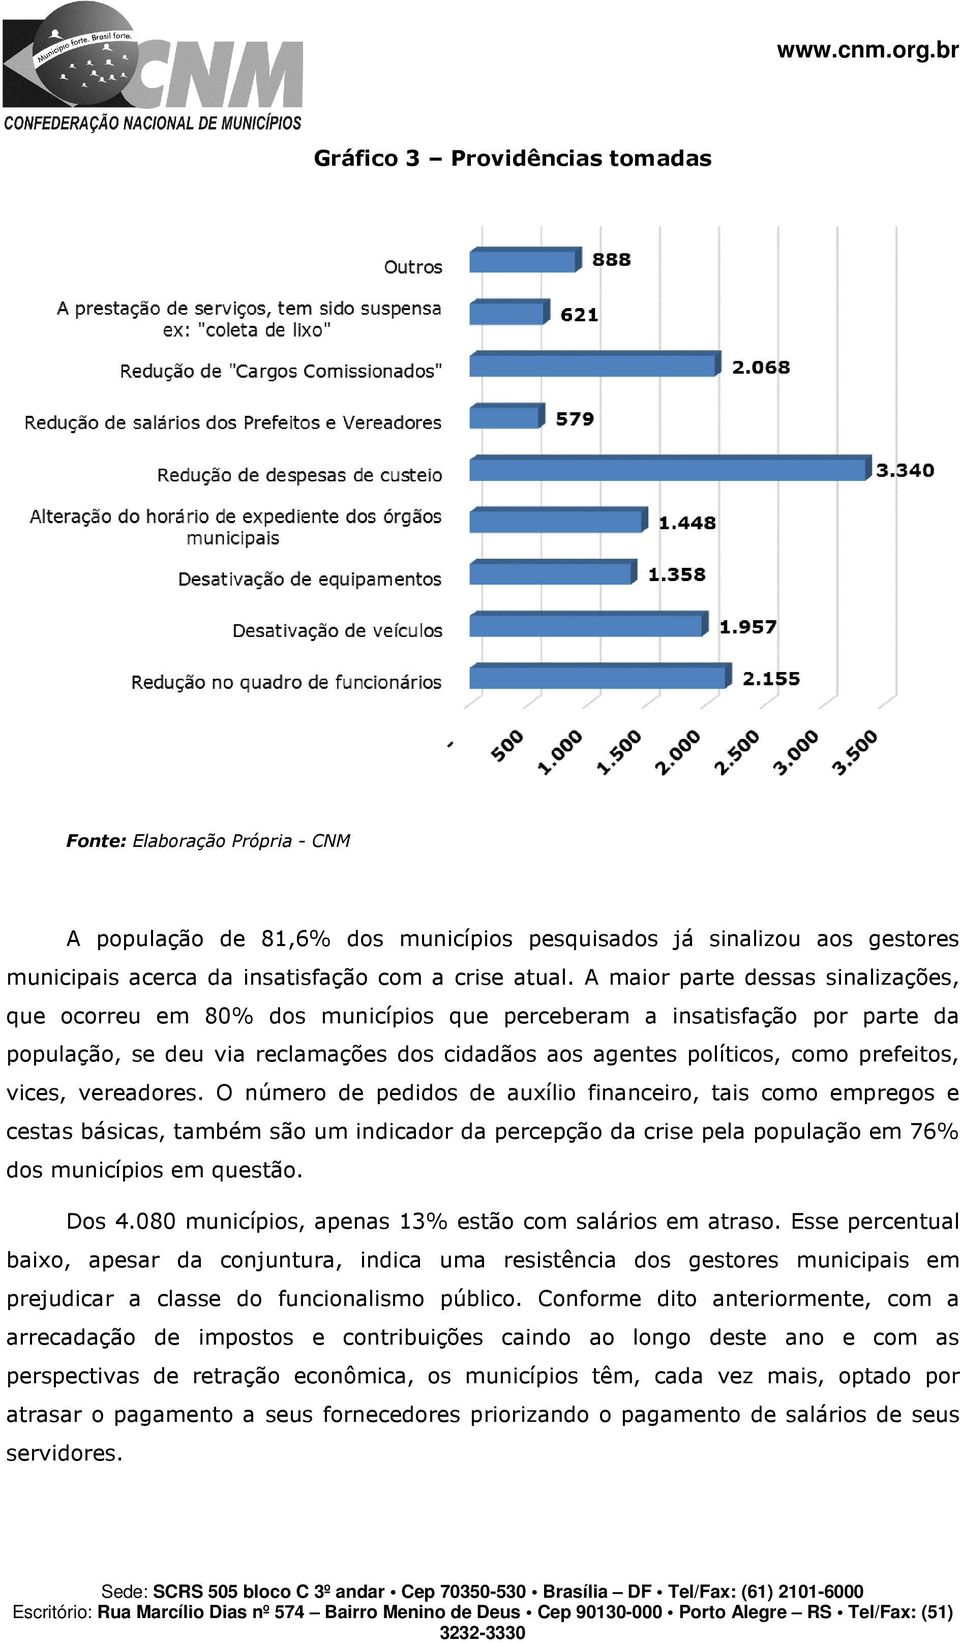 vices, vereadores. O número de pedidos de auxílio financeiro, tais como empregos e cestas básicas, também são um indicador da percepção da crise pela população em 76% dos municípios em questão. Dos 4.